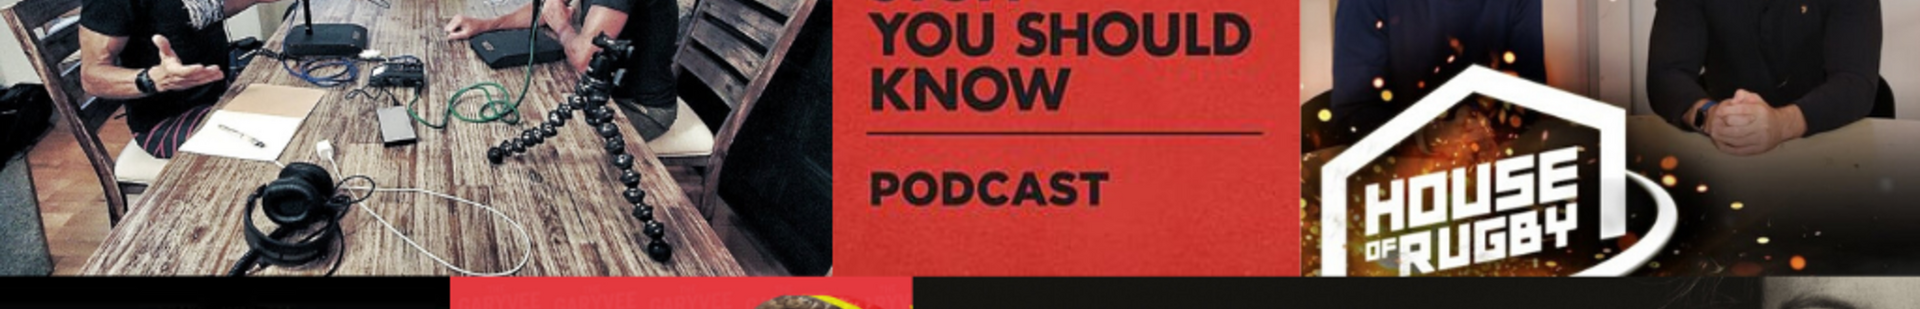 Podcast banner